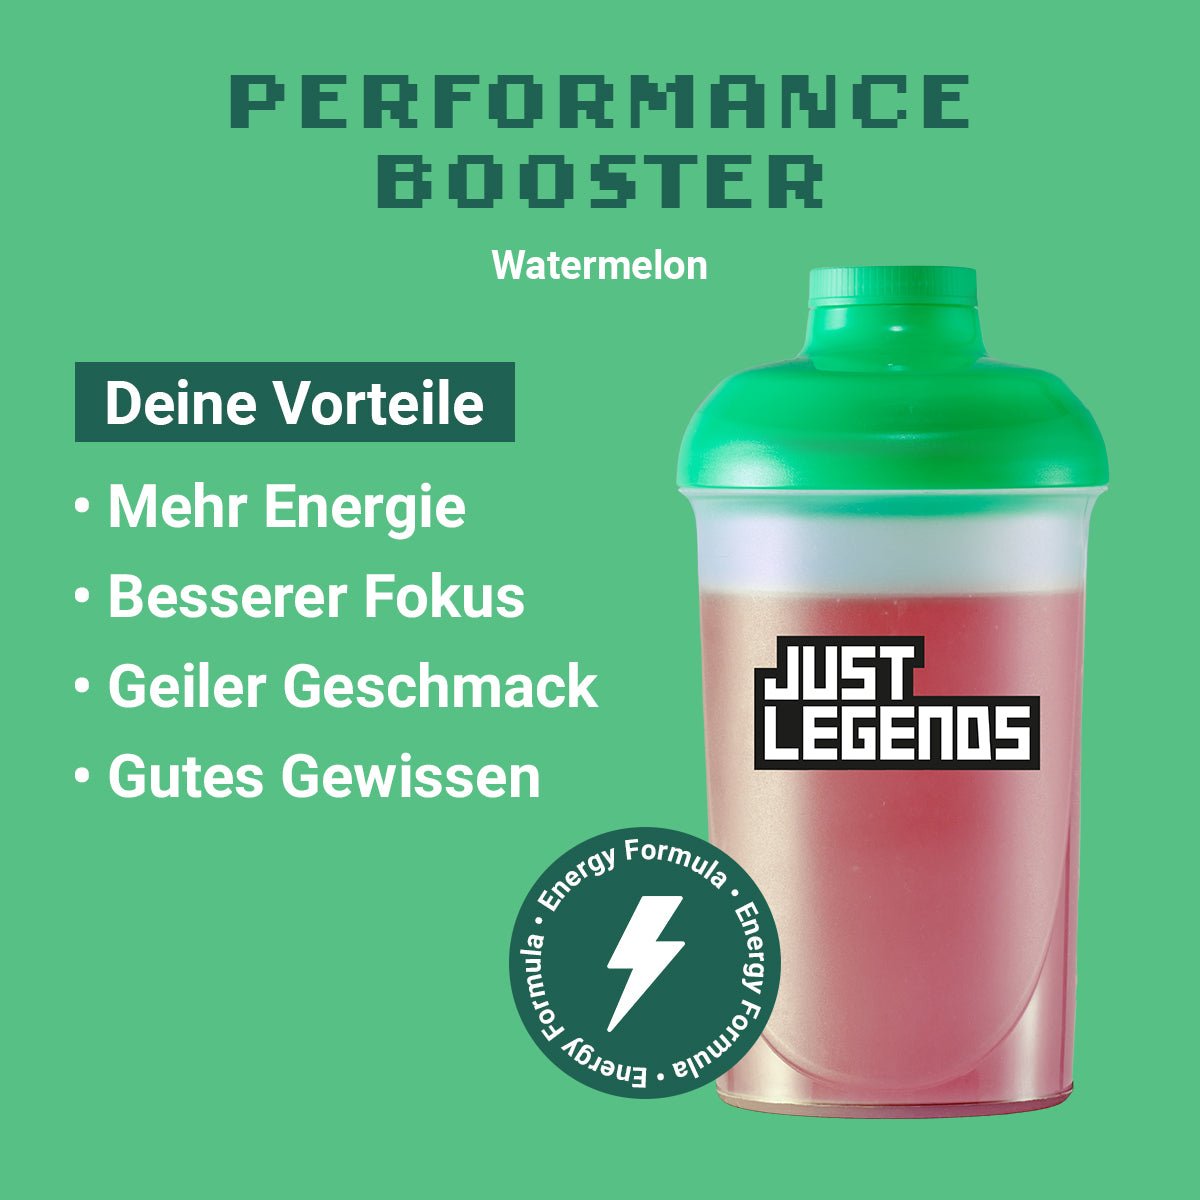 Just Legends Performance Booster Watermelon | Funktionaler, veganer Performance Booster auf Pulverbasis ohne Zucker, mit wenig Kalorien, vielen Vitaminen und natürlichen Aromen.